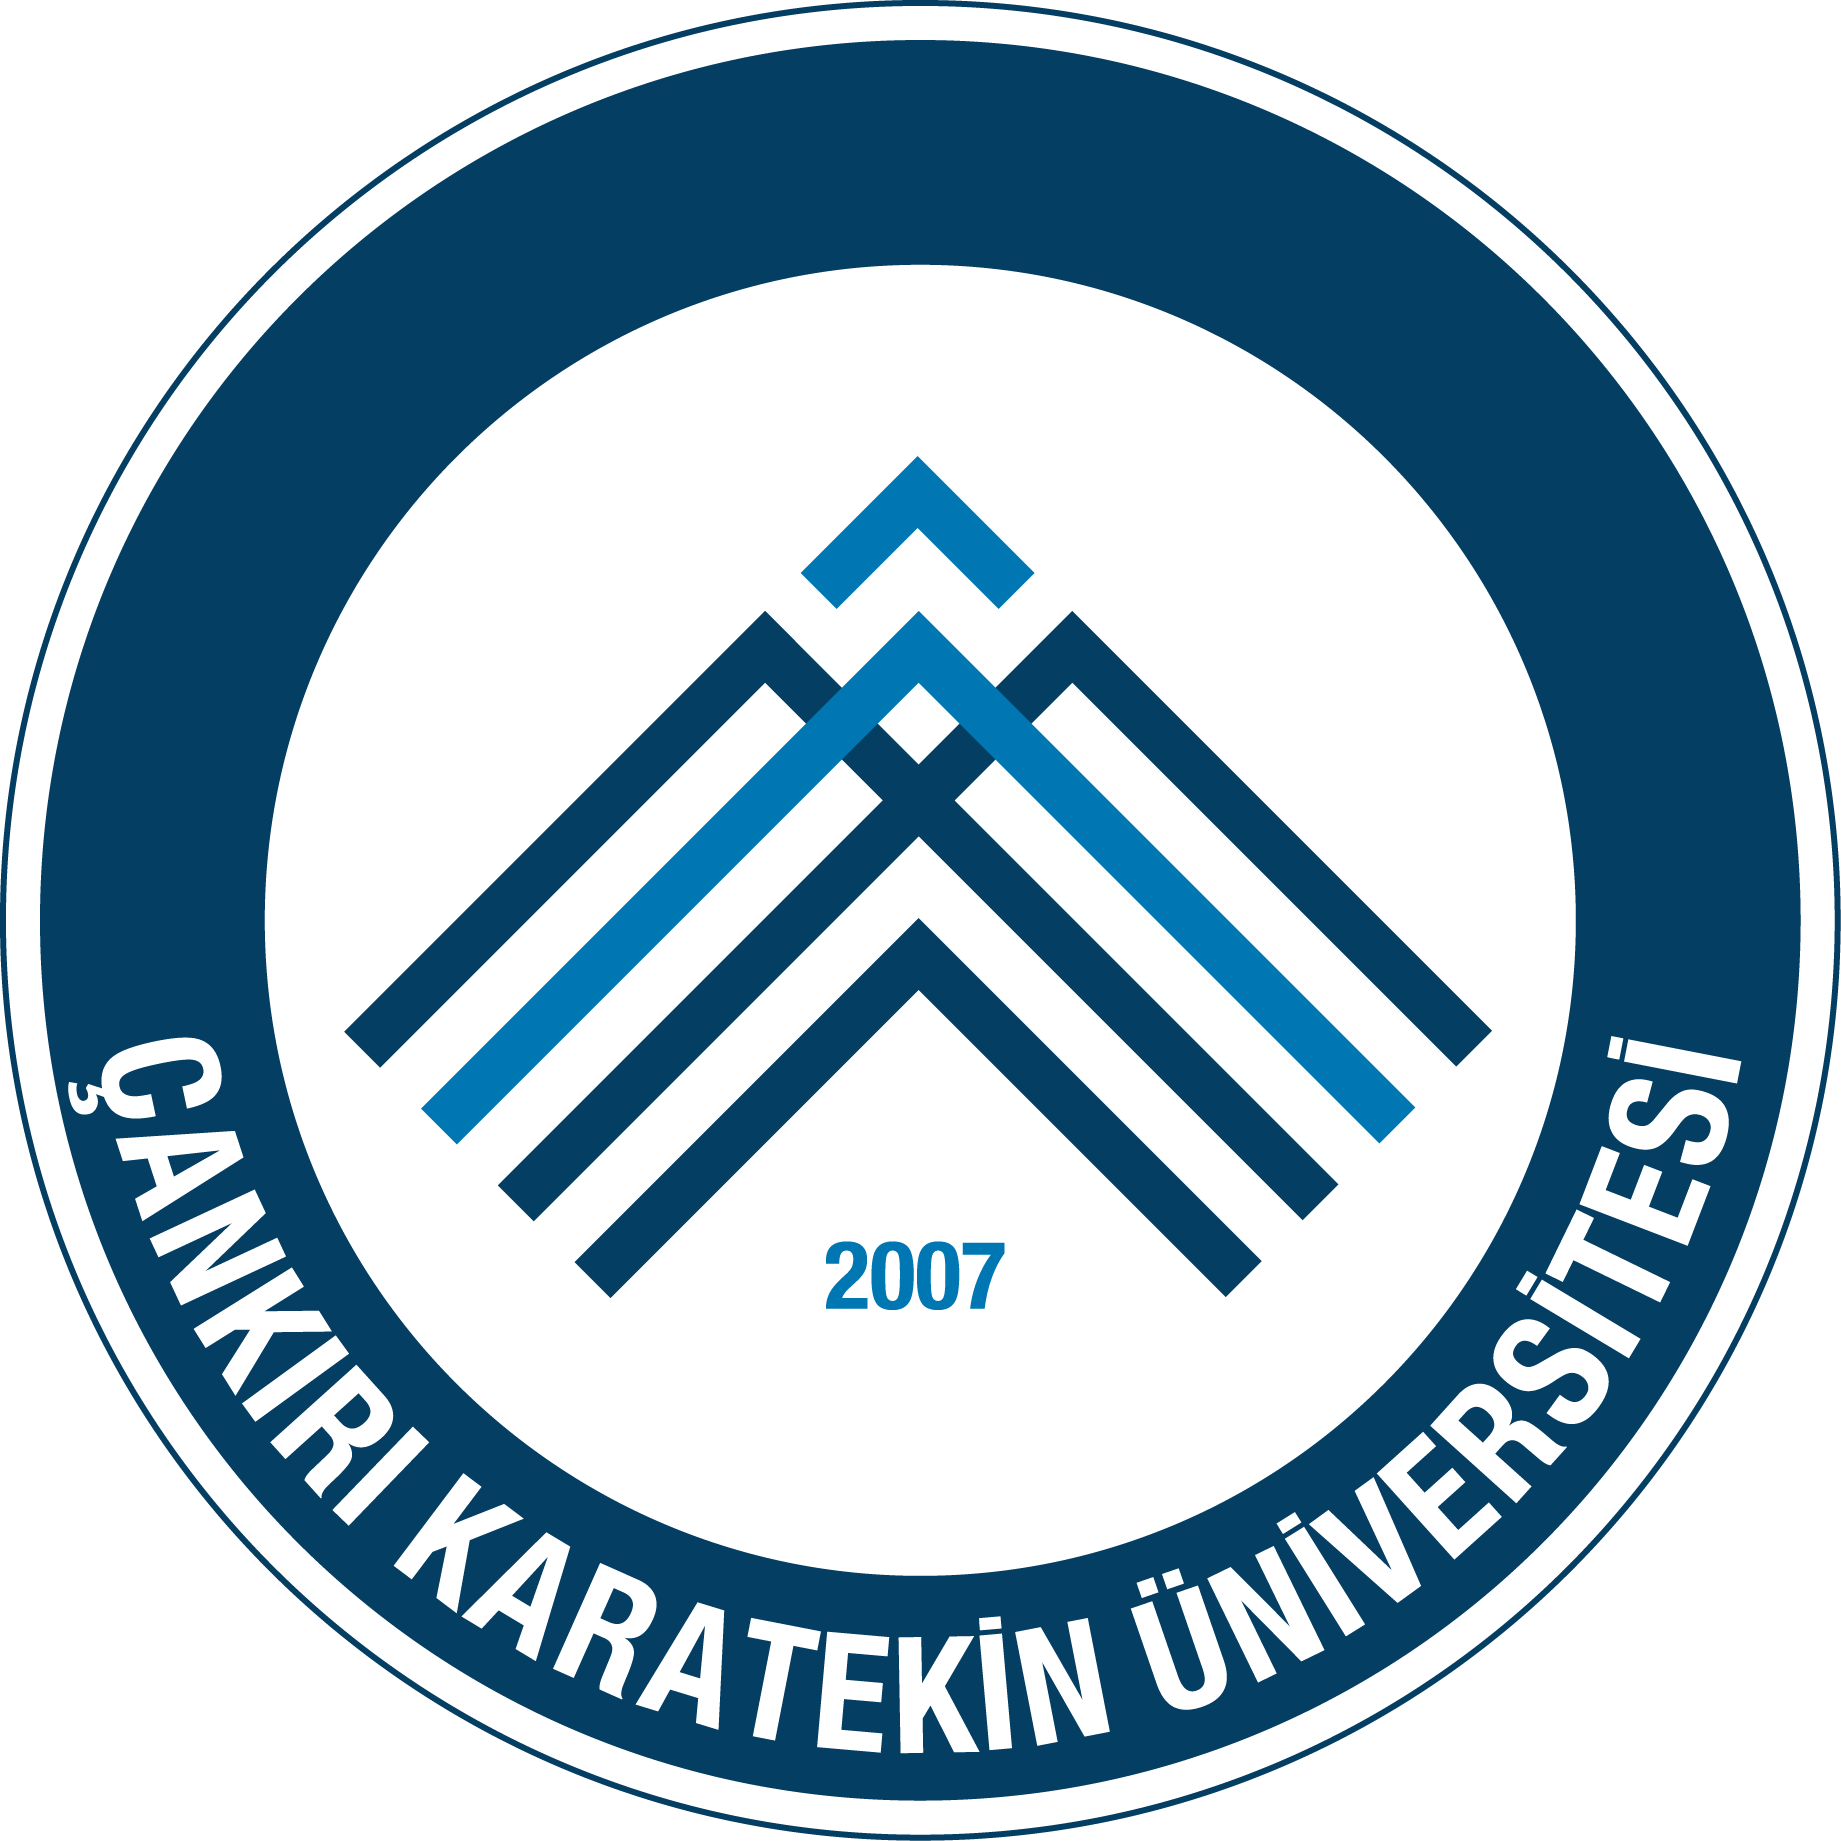 Çankırı Karatekin Üniversitesi Logo   Arma png